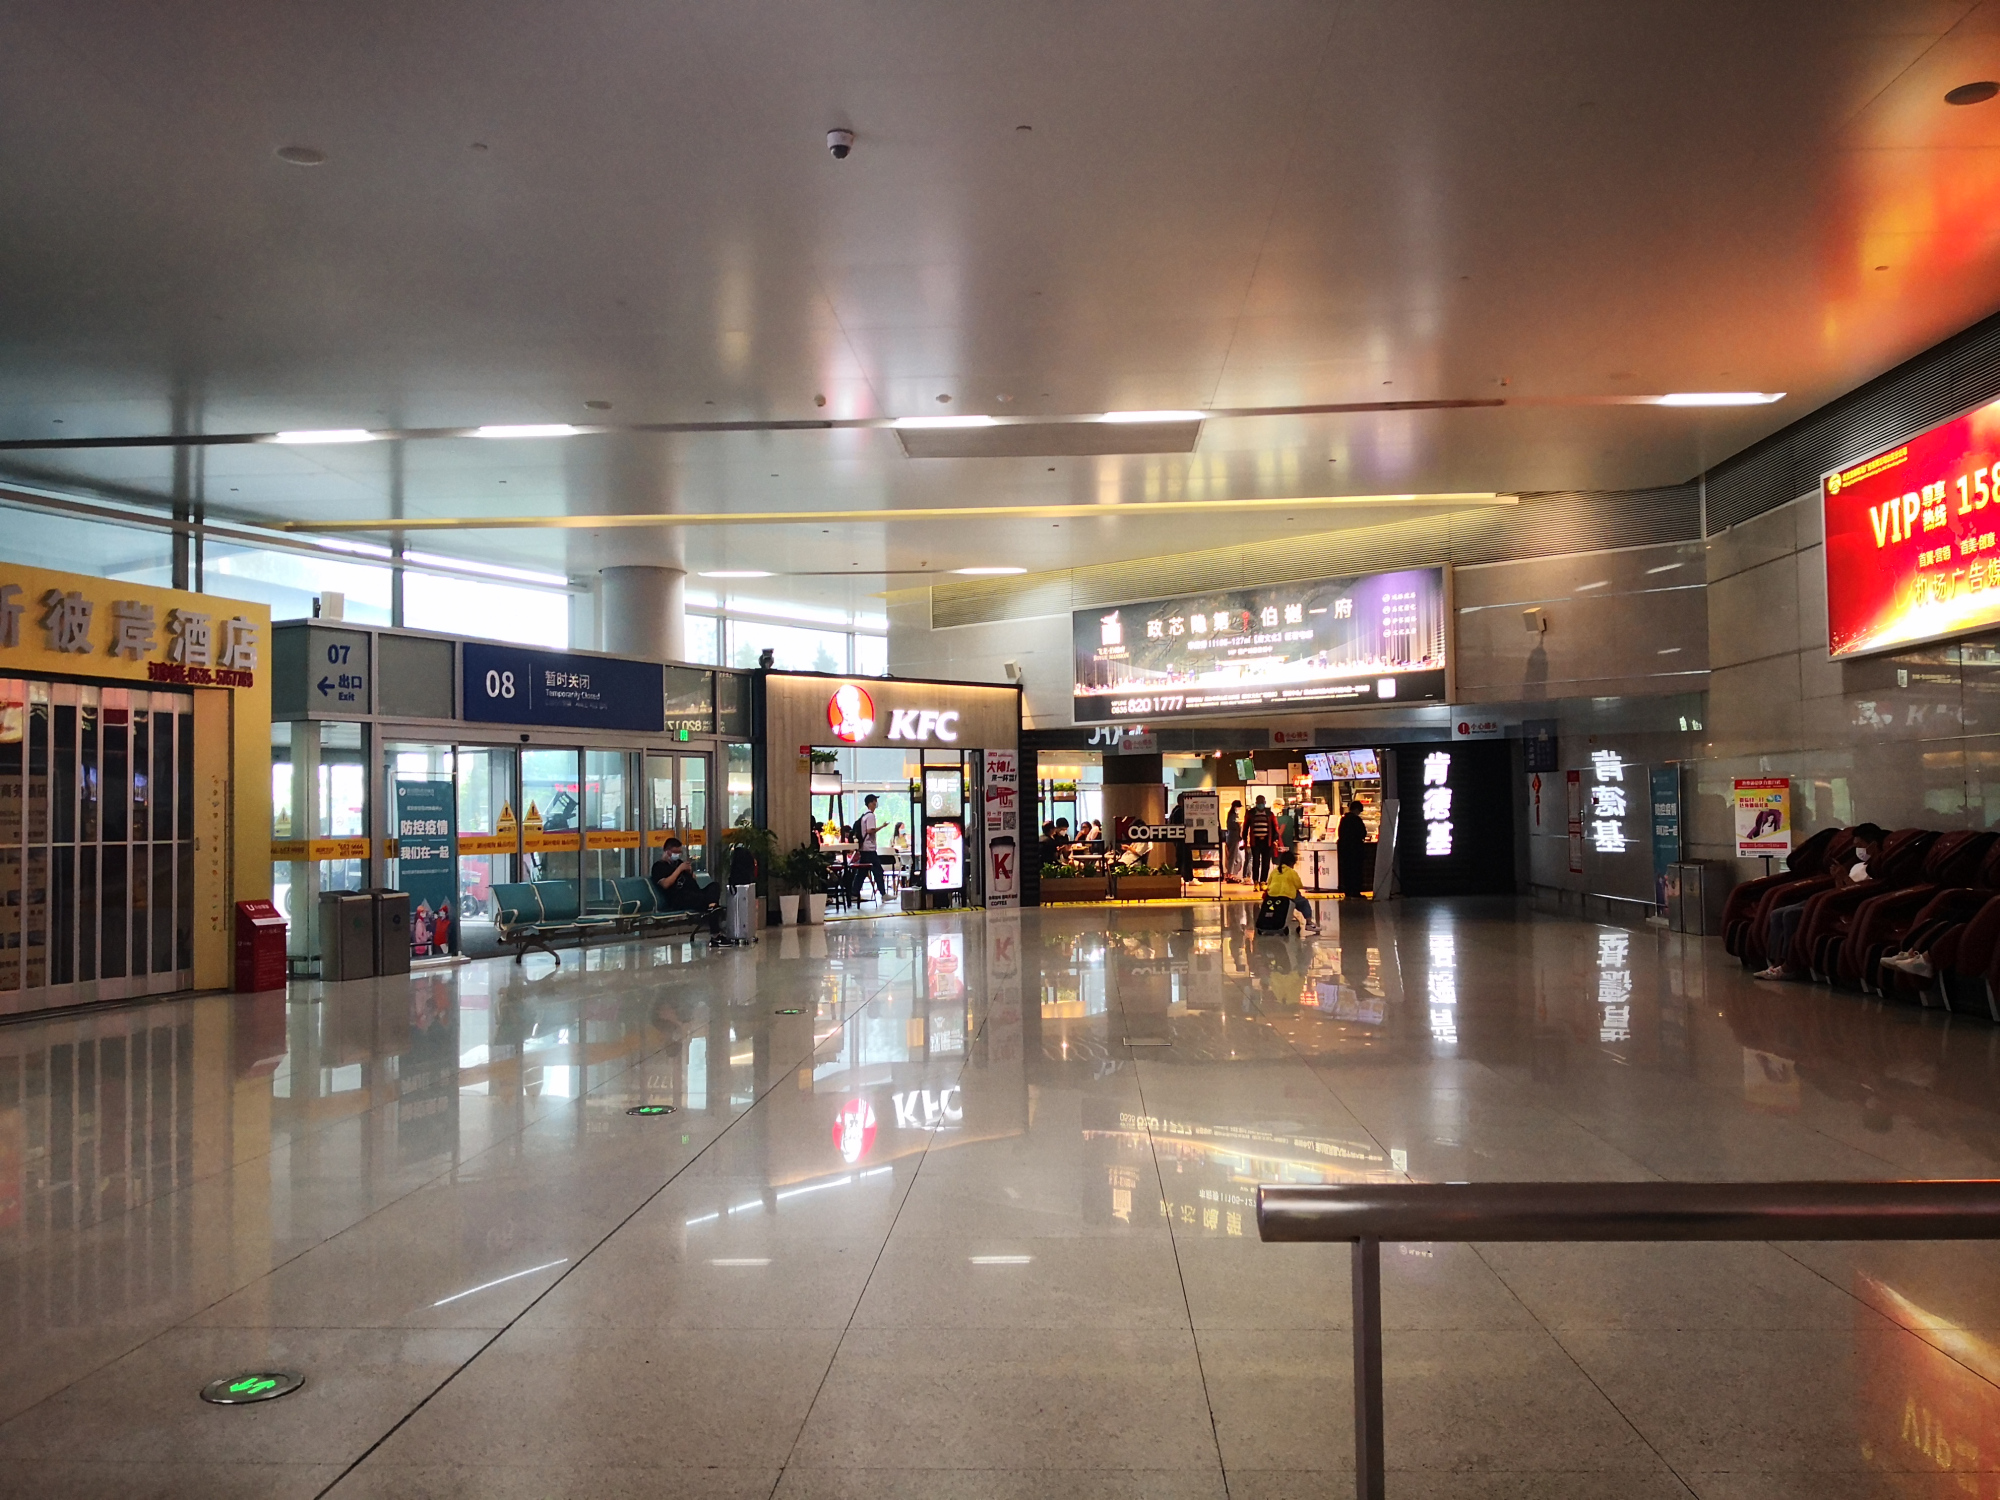 烟台蓬莱机场内部图图片